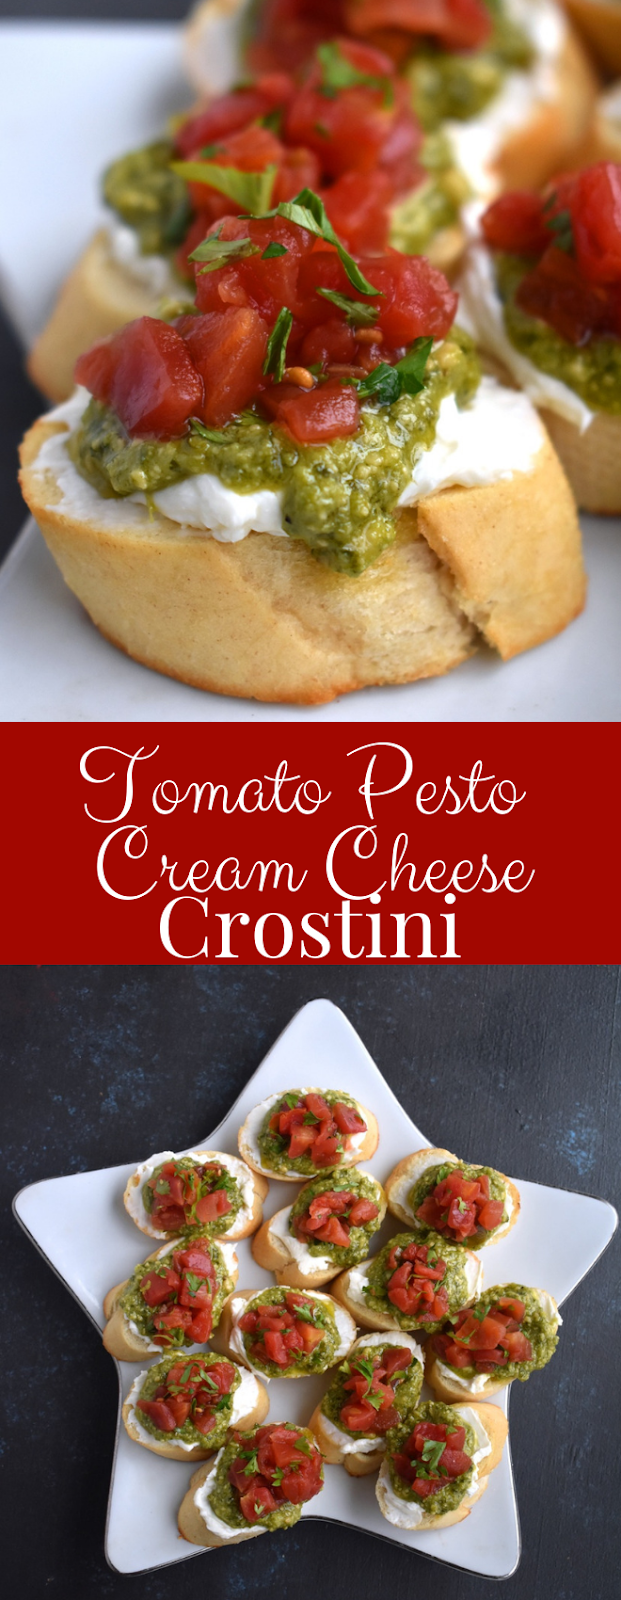 Tomato, pesto and cream cheese crostini